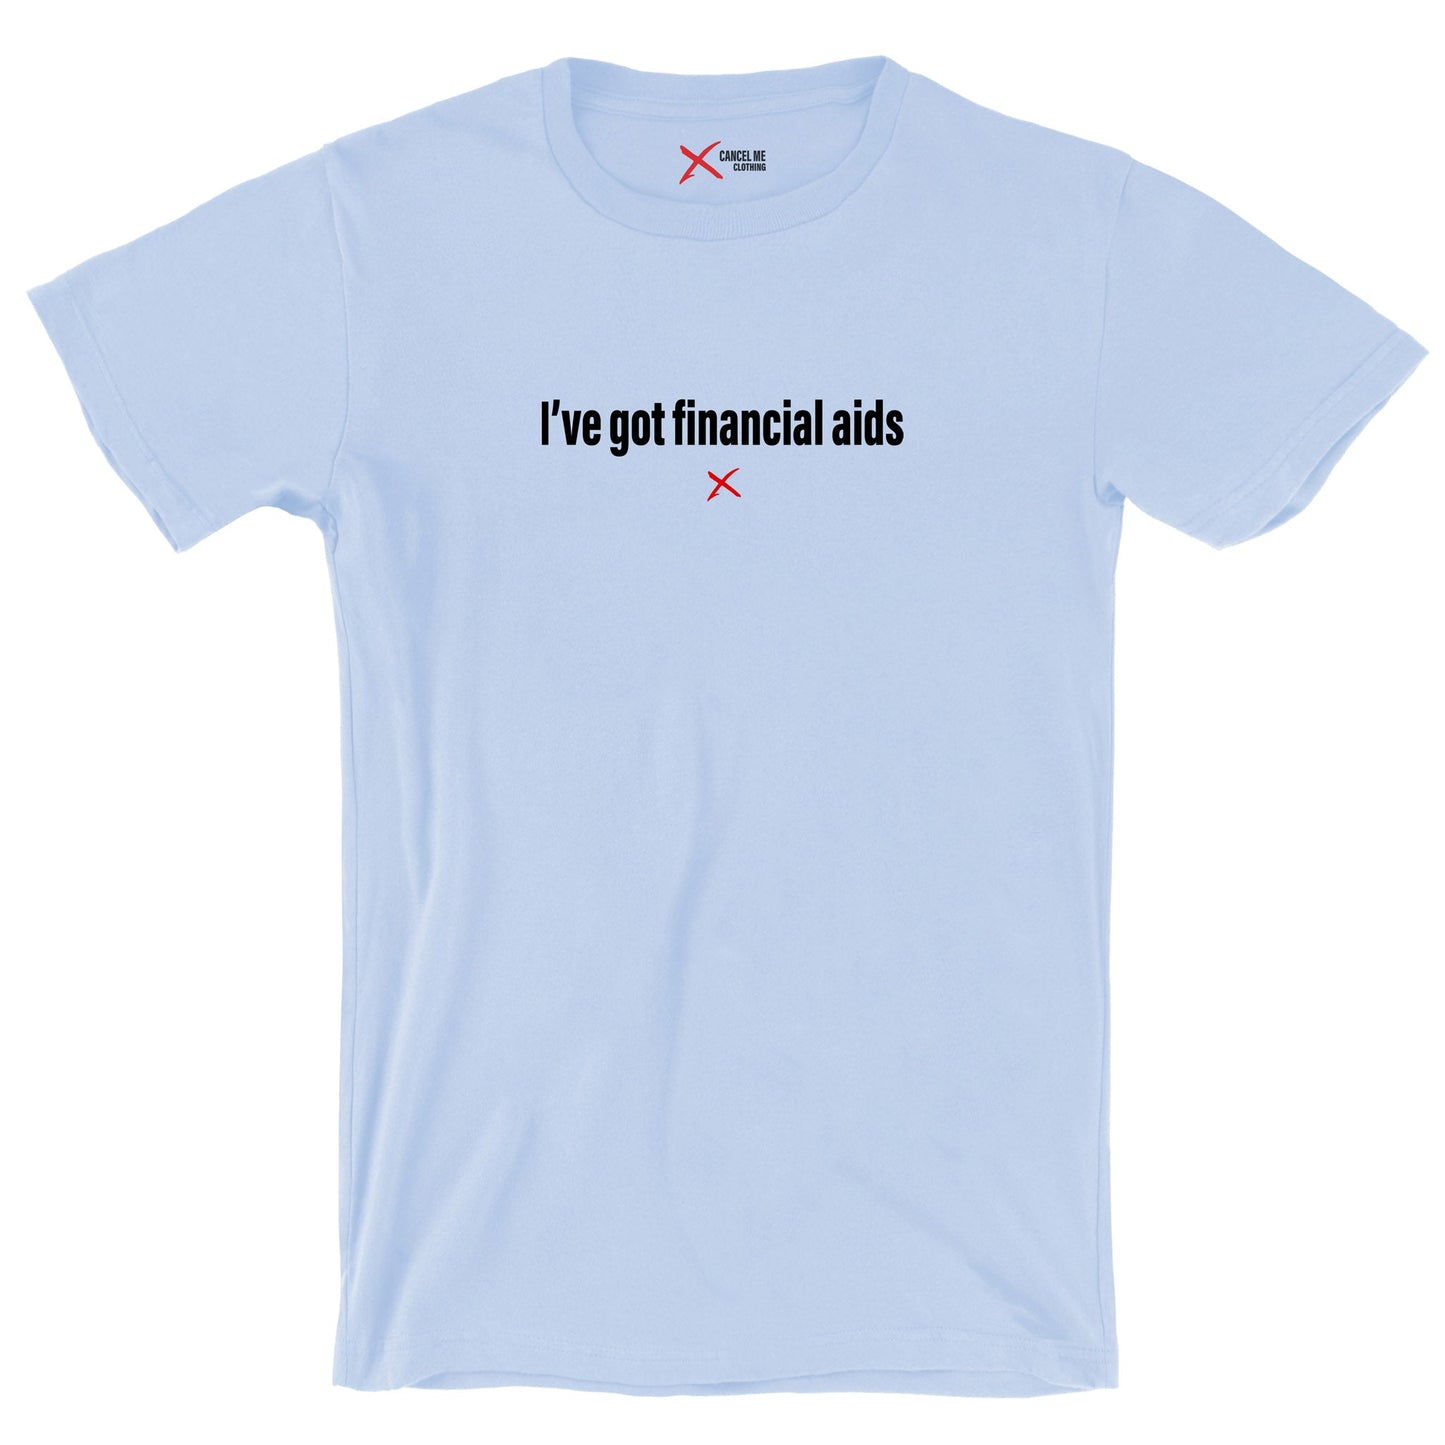 I've got financial aids - Shirt